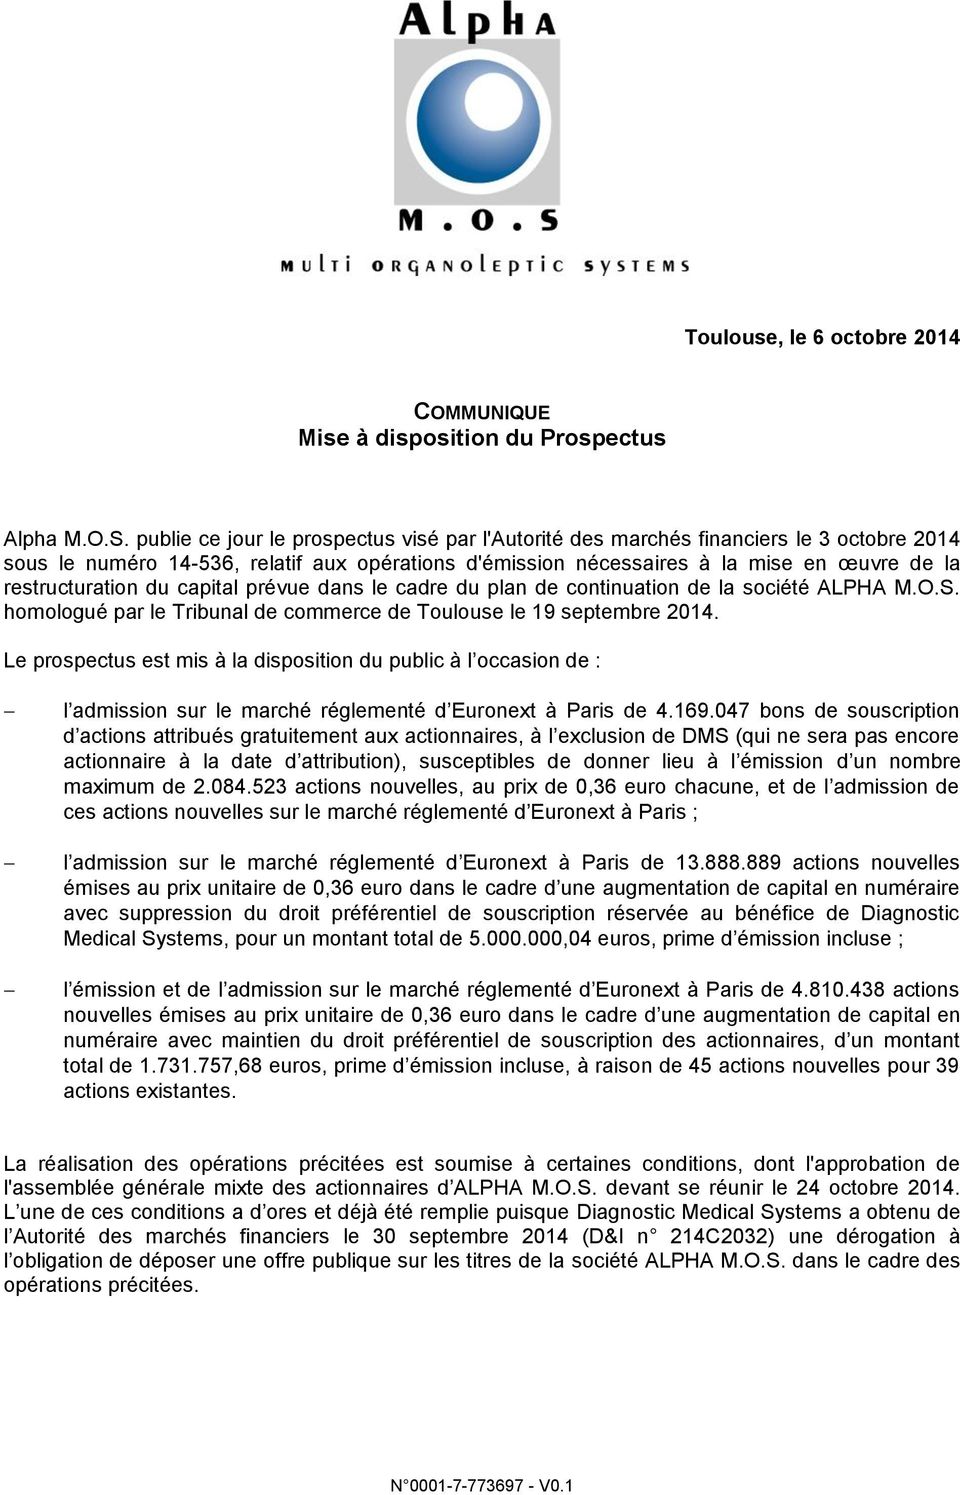 du capital prévue dans le cadre du plan de continuation de la société ALPHA M.O.S. homologué par le Tribunal de commerce de Toulouse le 19 septembre 2014.